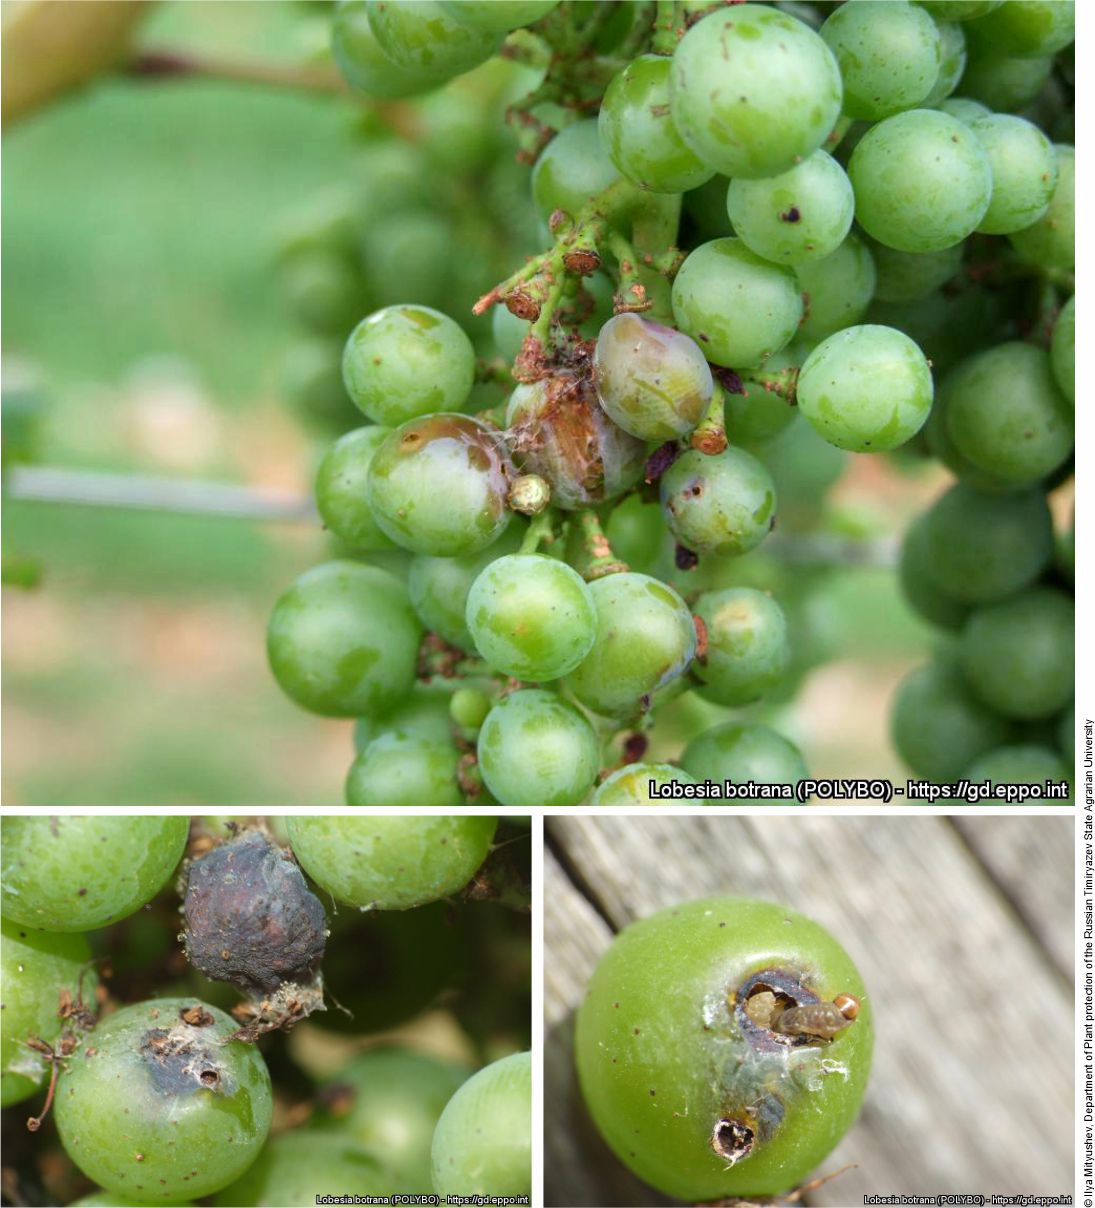 Grapes damaged by Lobesia botrana